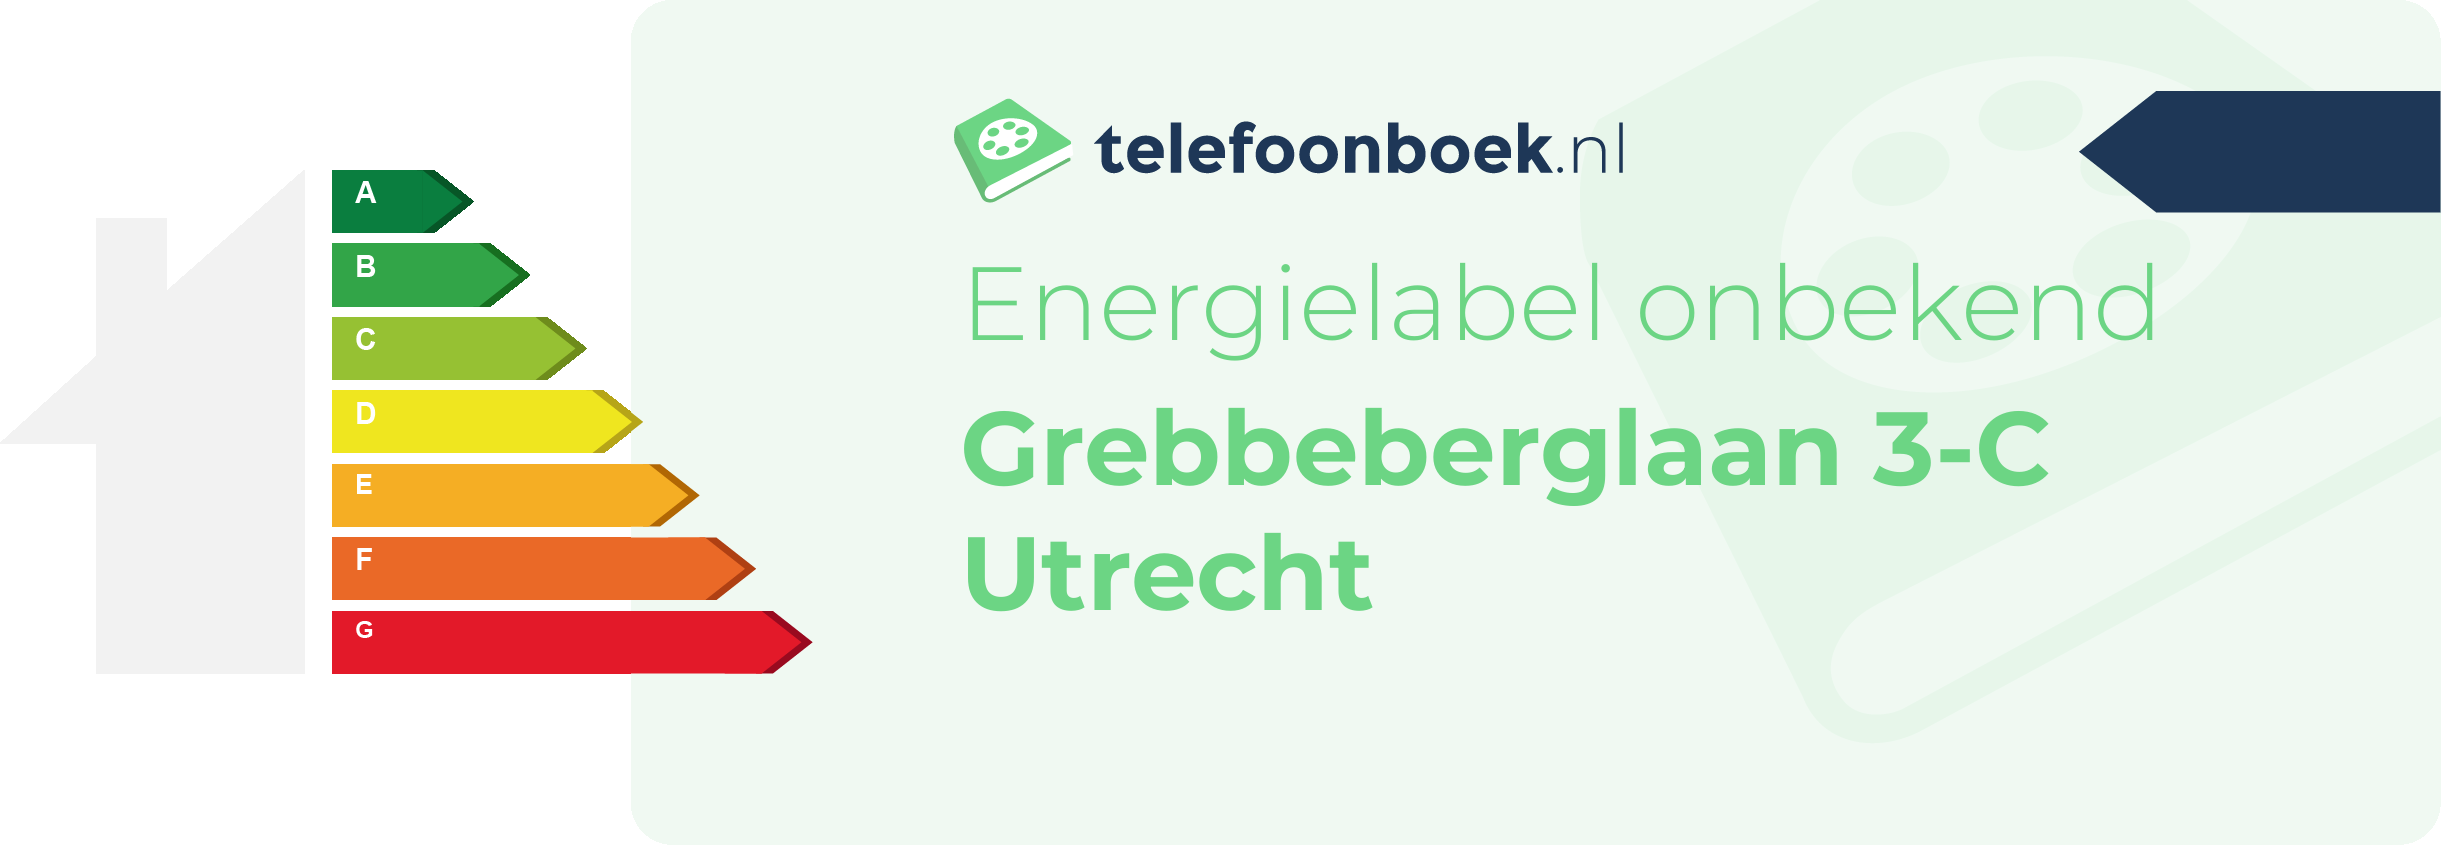 Energielabel Grebbeberglaan 3-C Utrecht